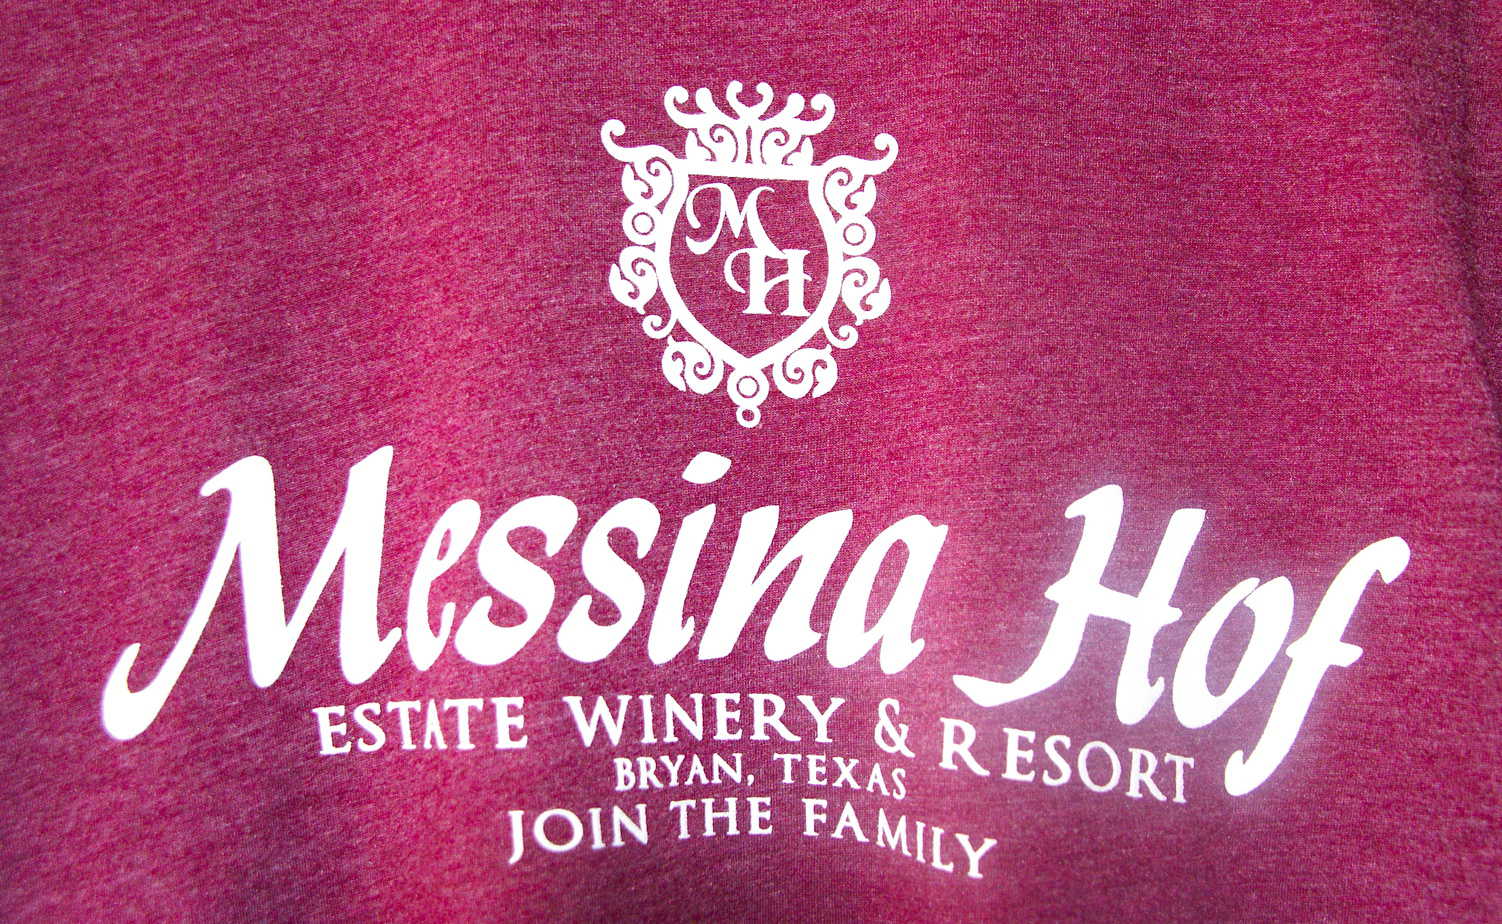 Messina Hof join the family